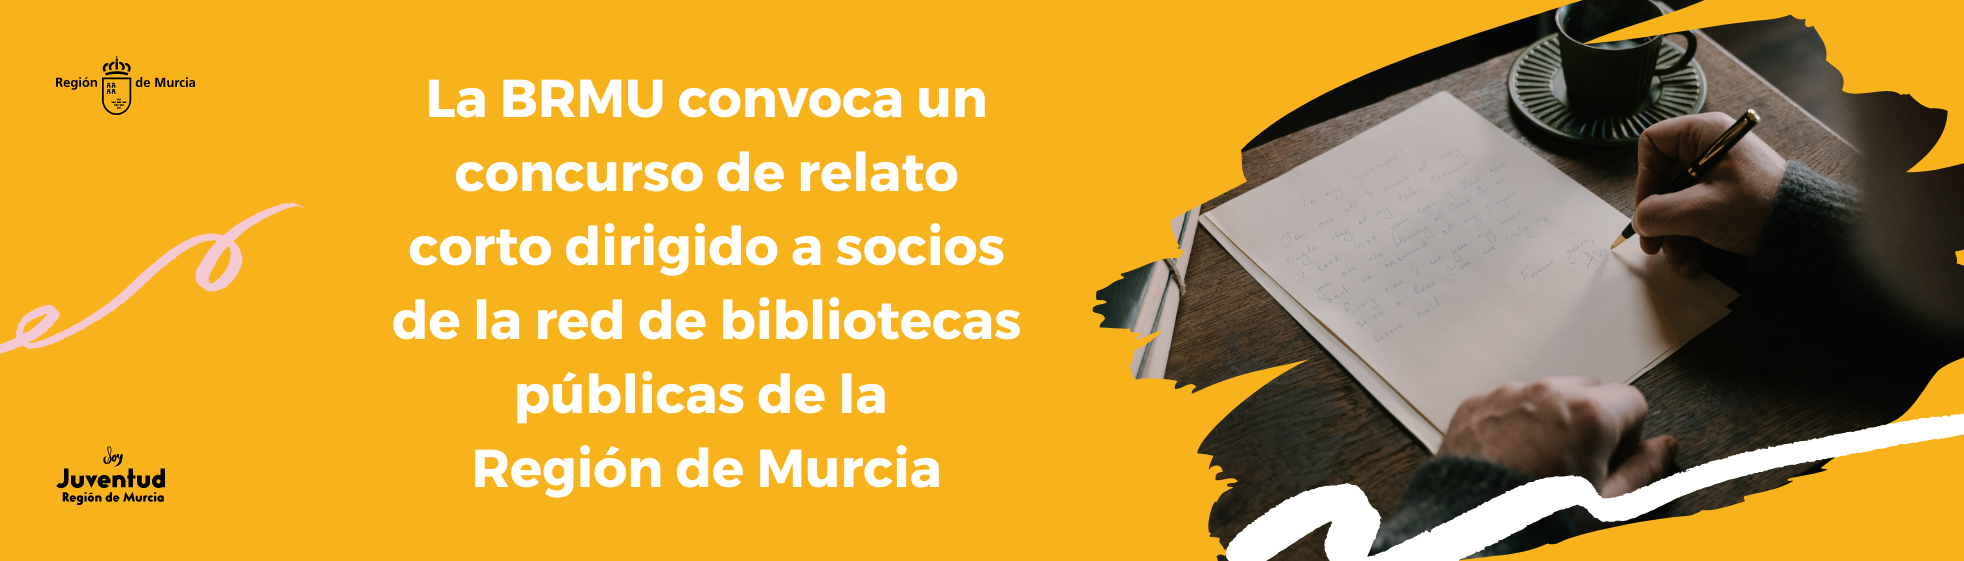 La BRMU convoca un concurso de relato corto dirigido a socios de la red de bibliotecas públicas de la Región